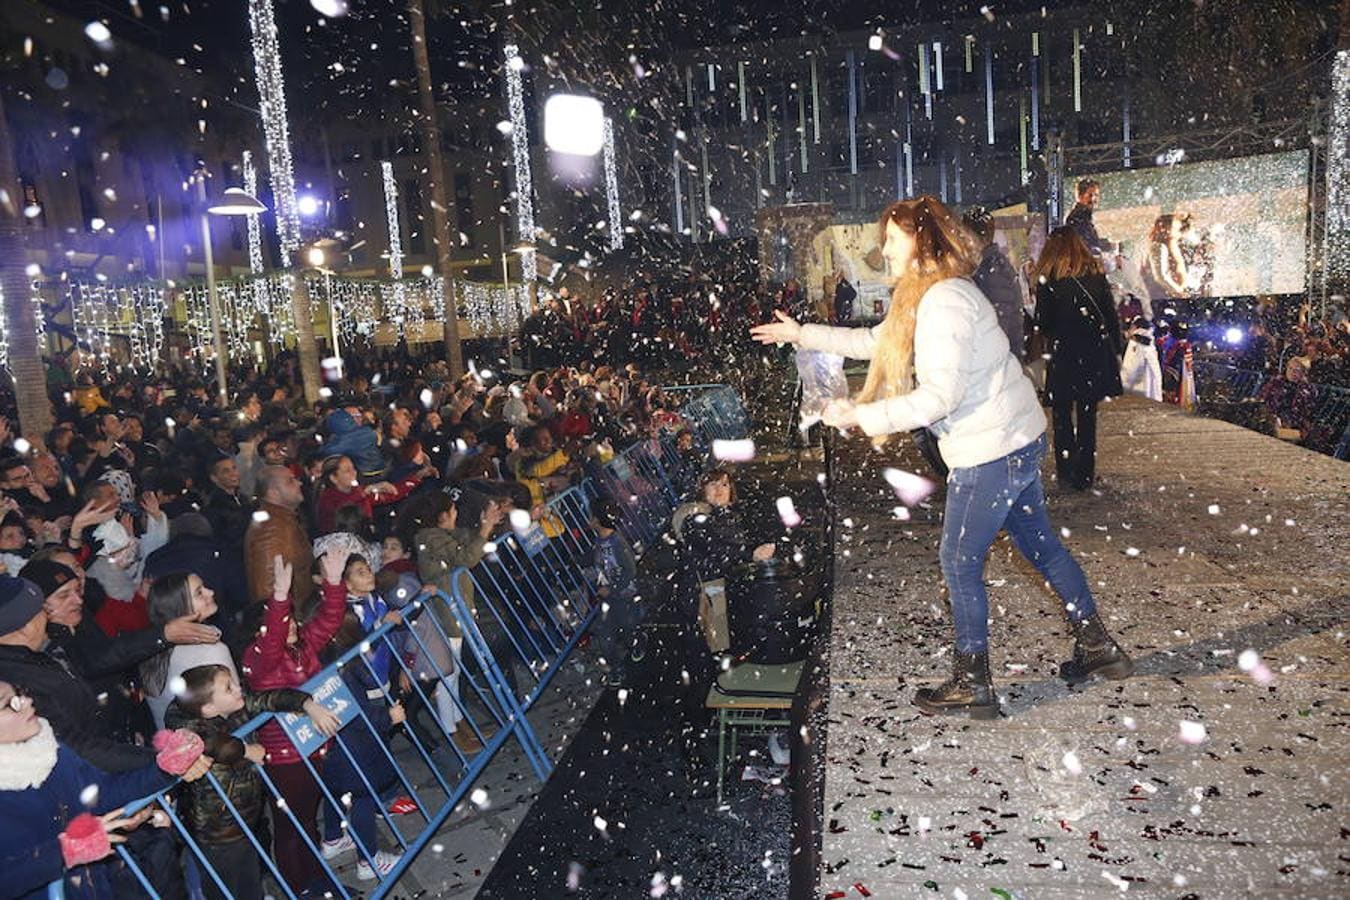 Miles de personas asistieron en la tarde noche de hoy a la Cabalgata de Reyes que desde las siete de la tarde y hasta pasadas las nueve de la noche recorrió el centro de El Ejido. Más de mil personas pusieron el color, la alegría, la magia y la música para que el numeroso público disfrutara.